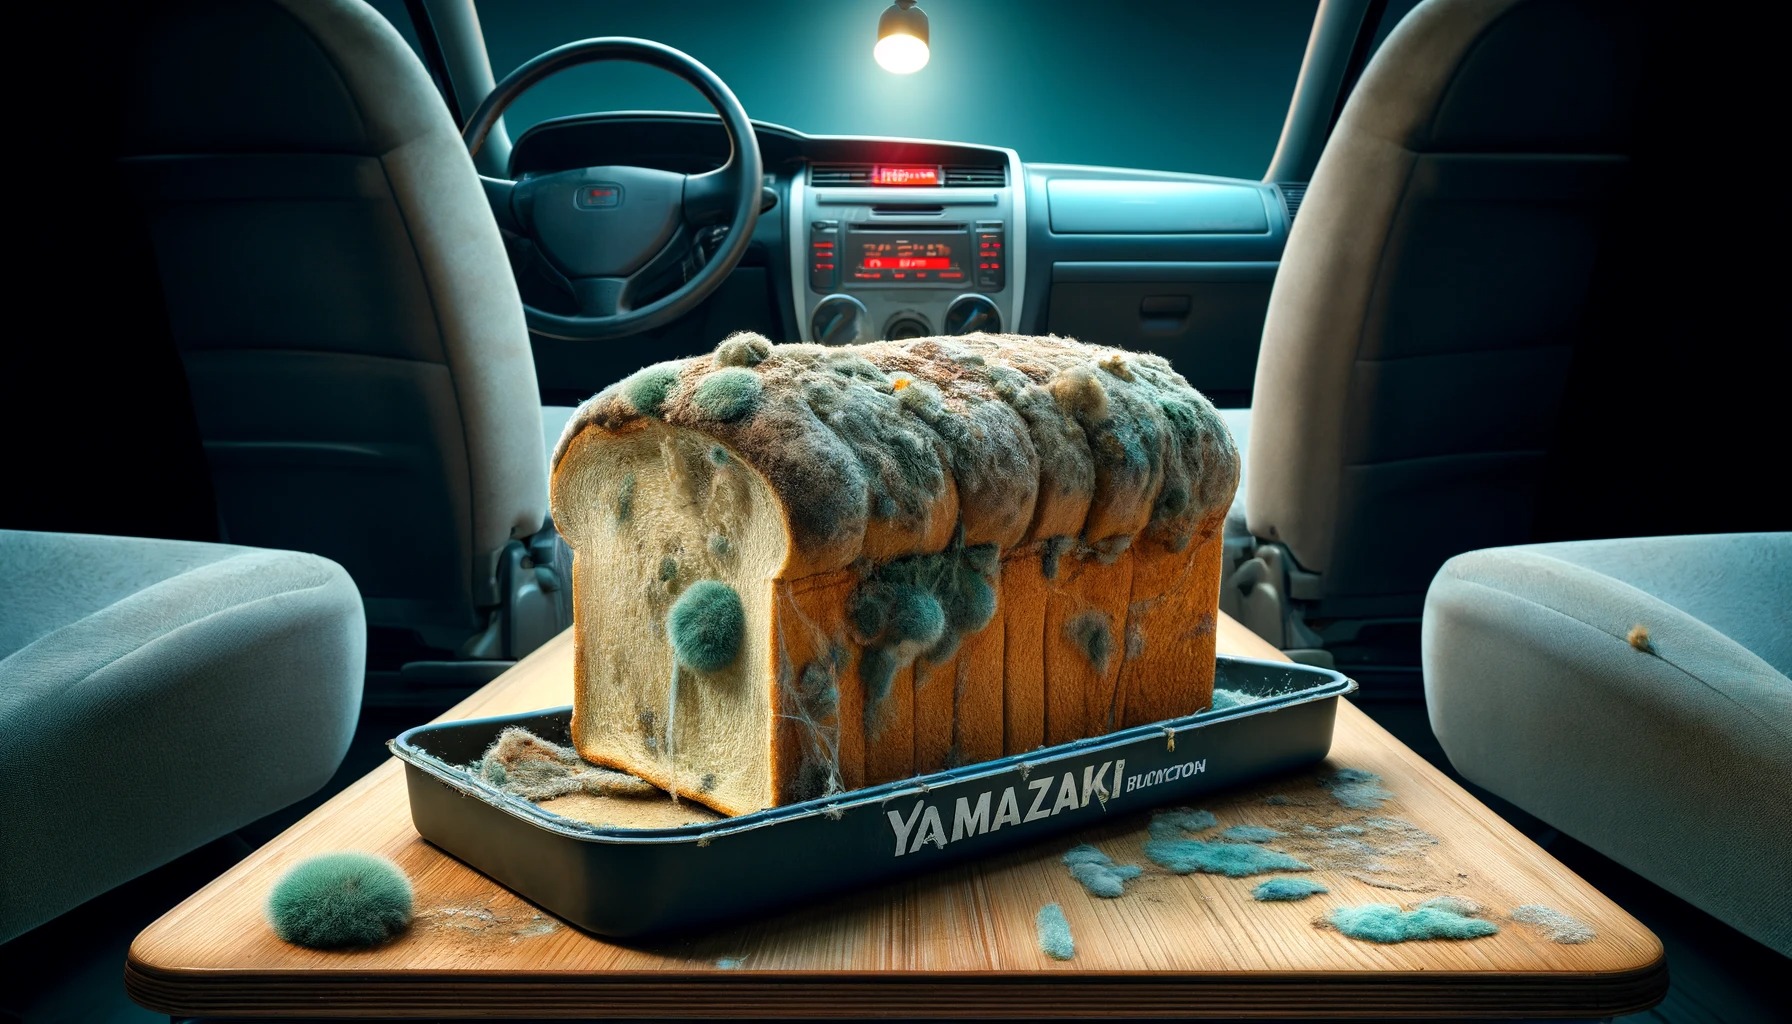 【衝撃画像】ヤマザキの食パン、車内で9か月間も放置された結果、とんでもない姿で発見される…